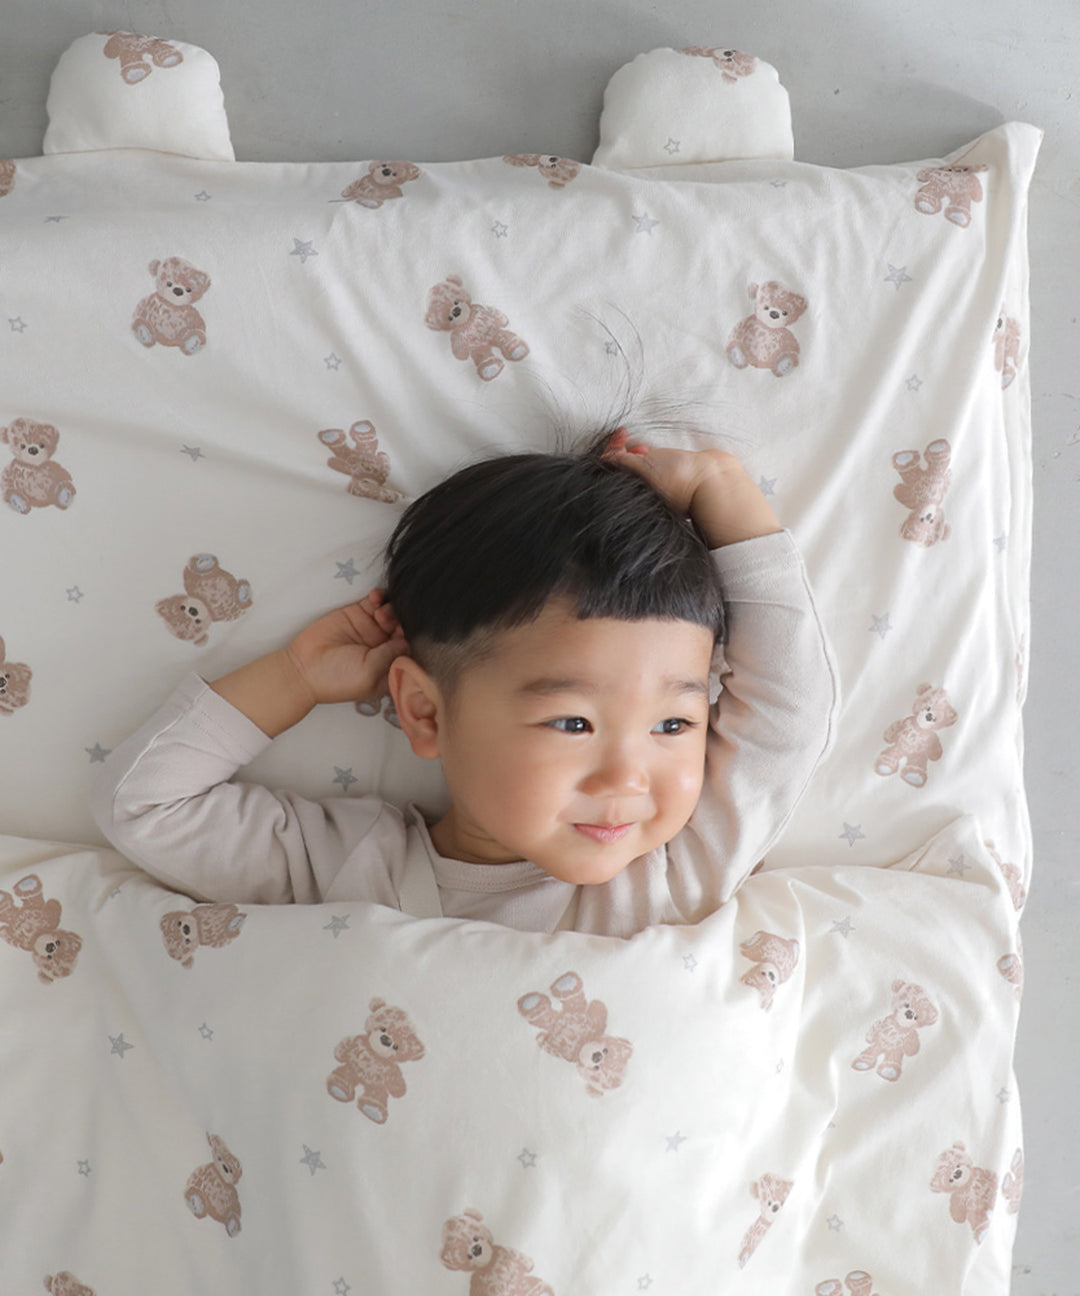 可清洗儿童午睡专用床被套装【天竺面料】